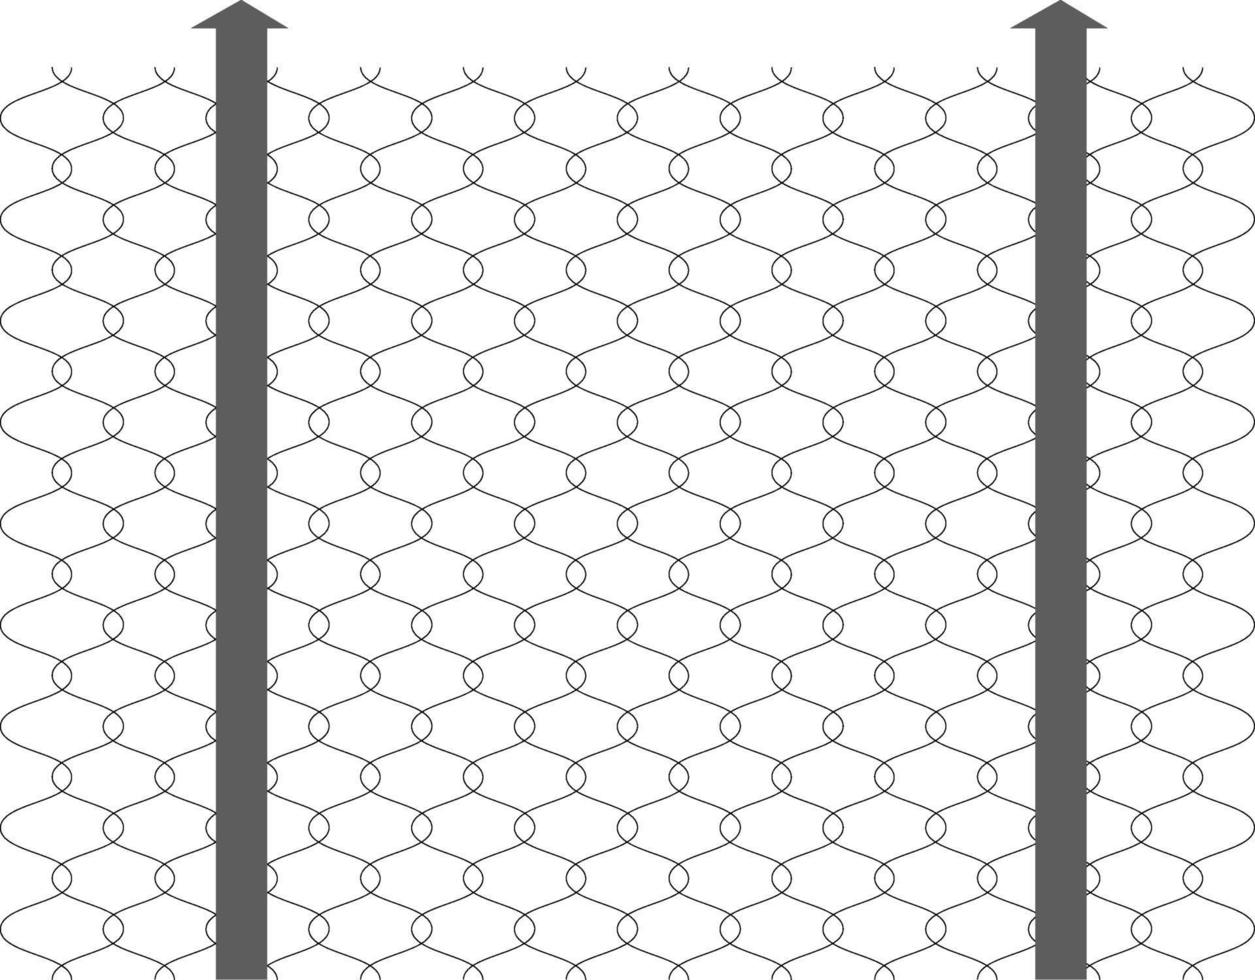 Vallas de alambre, ilustración, vector sobre fondo blanco.